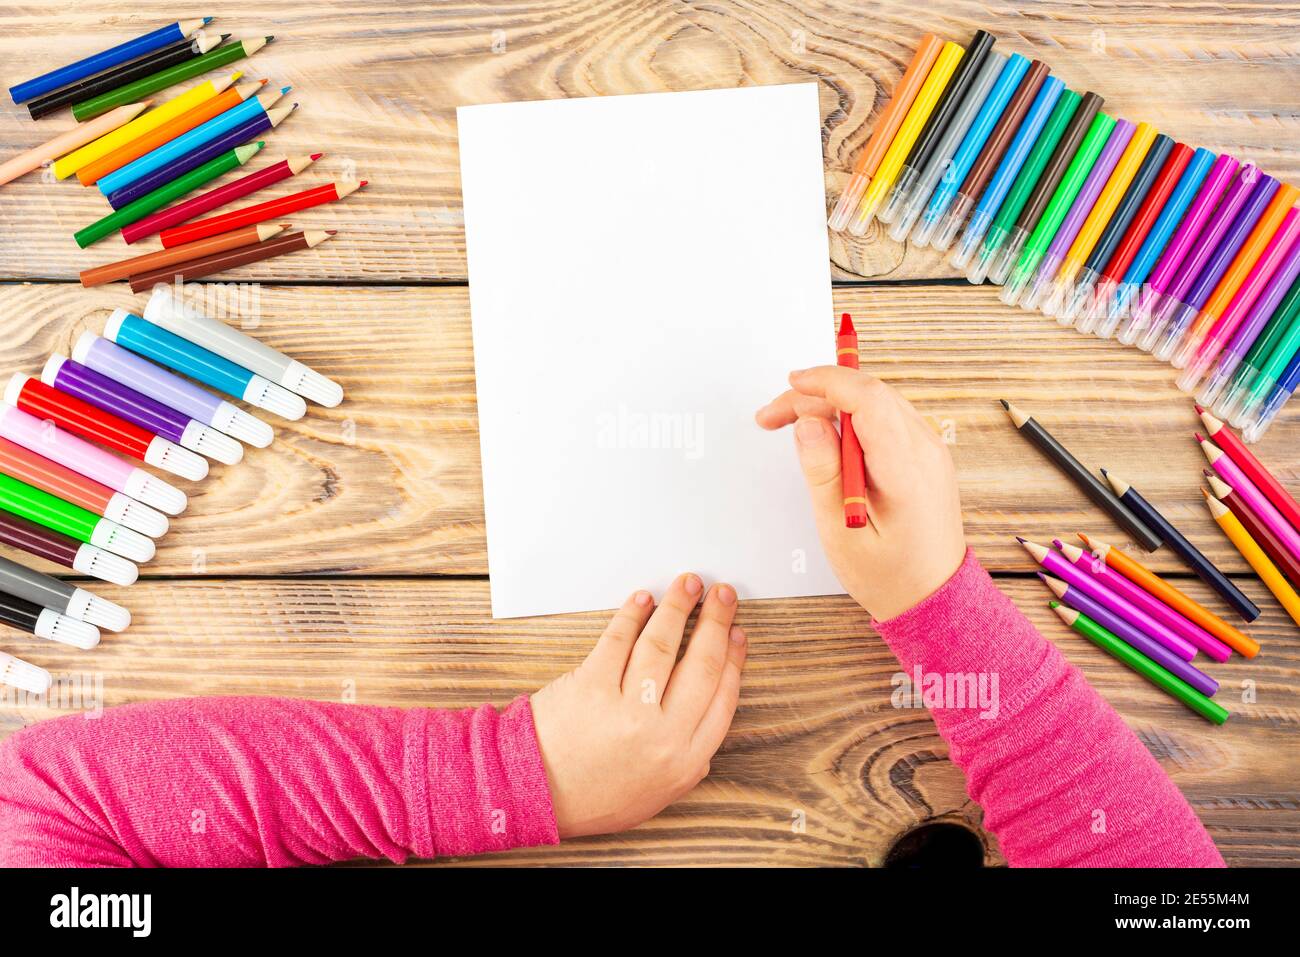 La bambina si prepara a dipingere su un foglio di carta vuoto. Il disegno è  fatto